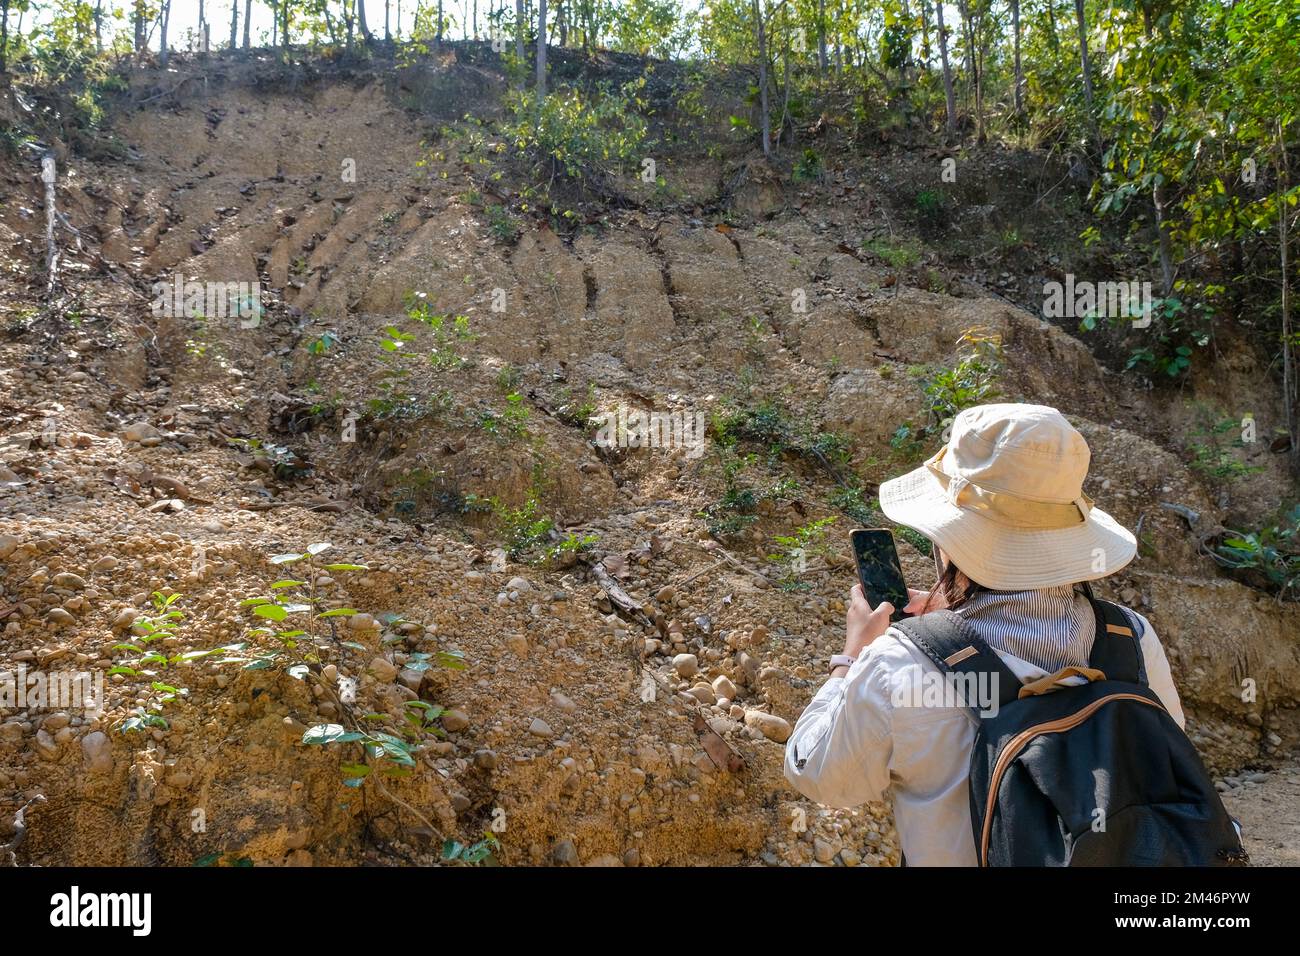 Une géologue féminine utilisant un téléphone portable inspectant la nature, analysant des rochers ou des cailloux. Les chercheurs recueillent des échantillons de matériel biologique. Environnement Banque D'Images